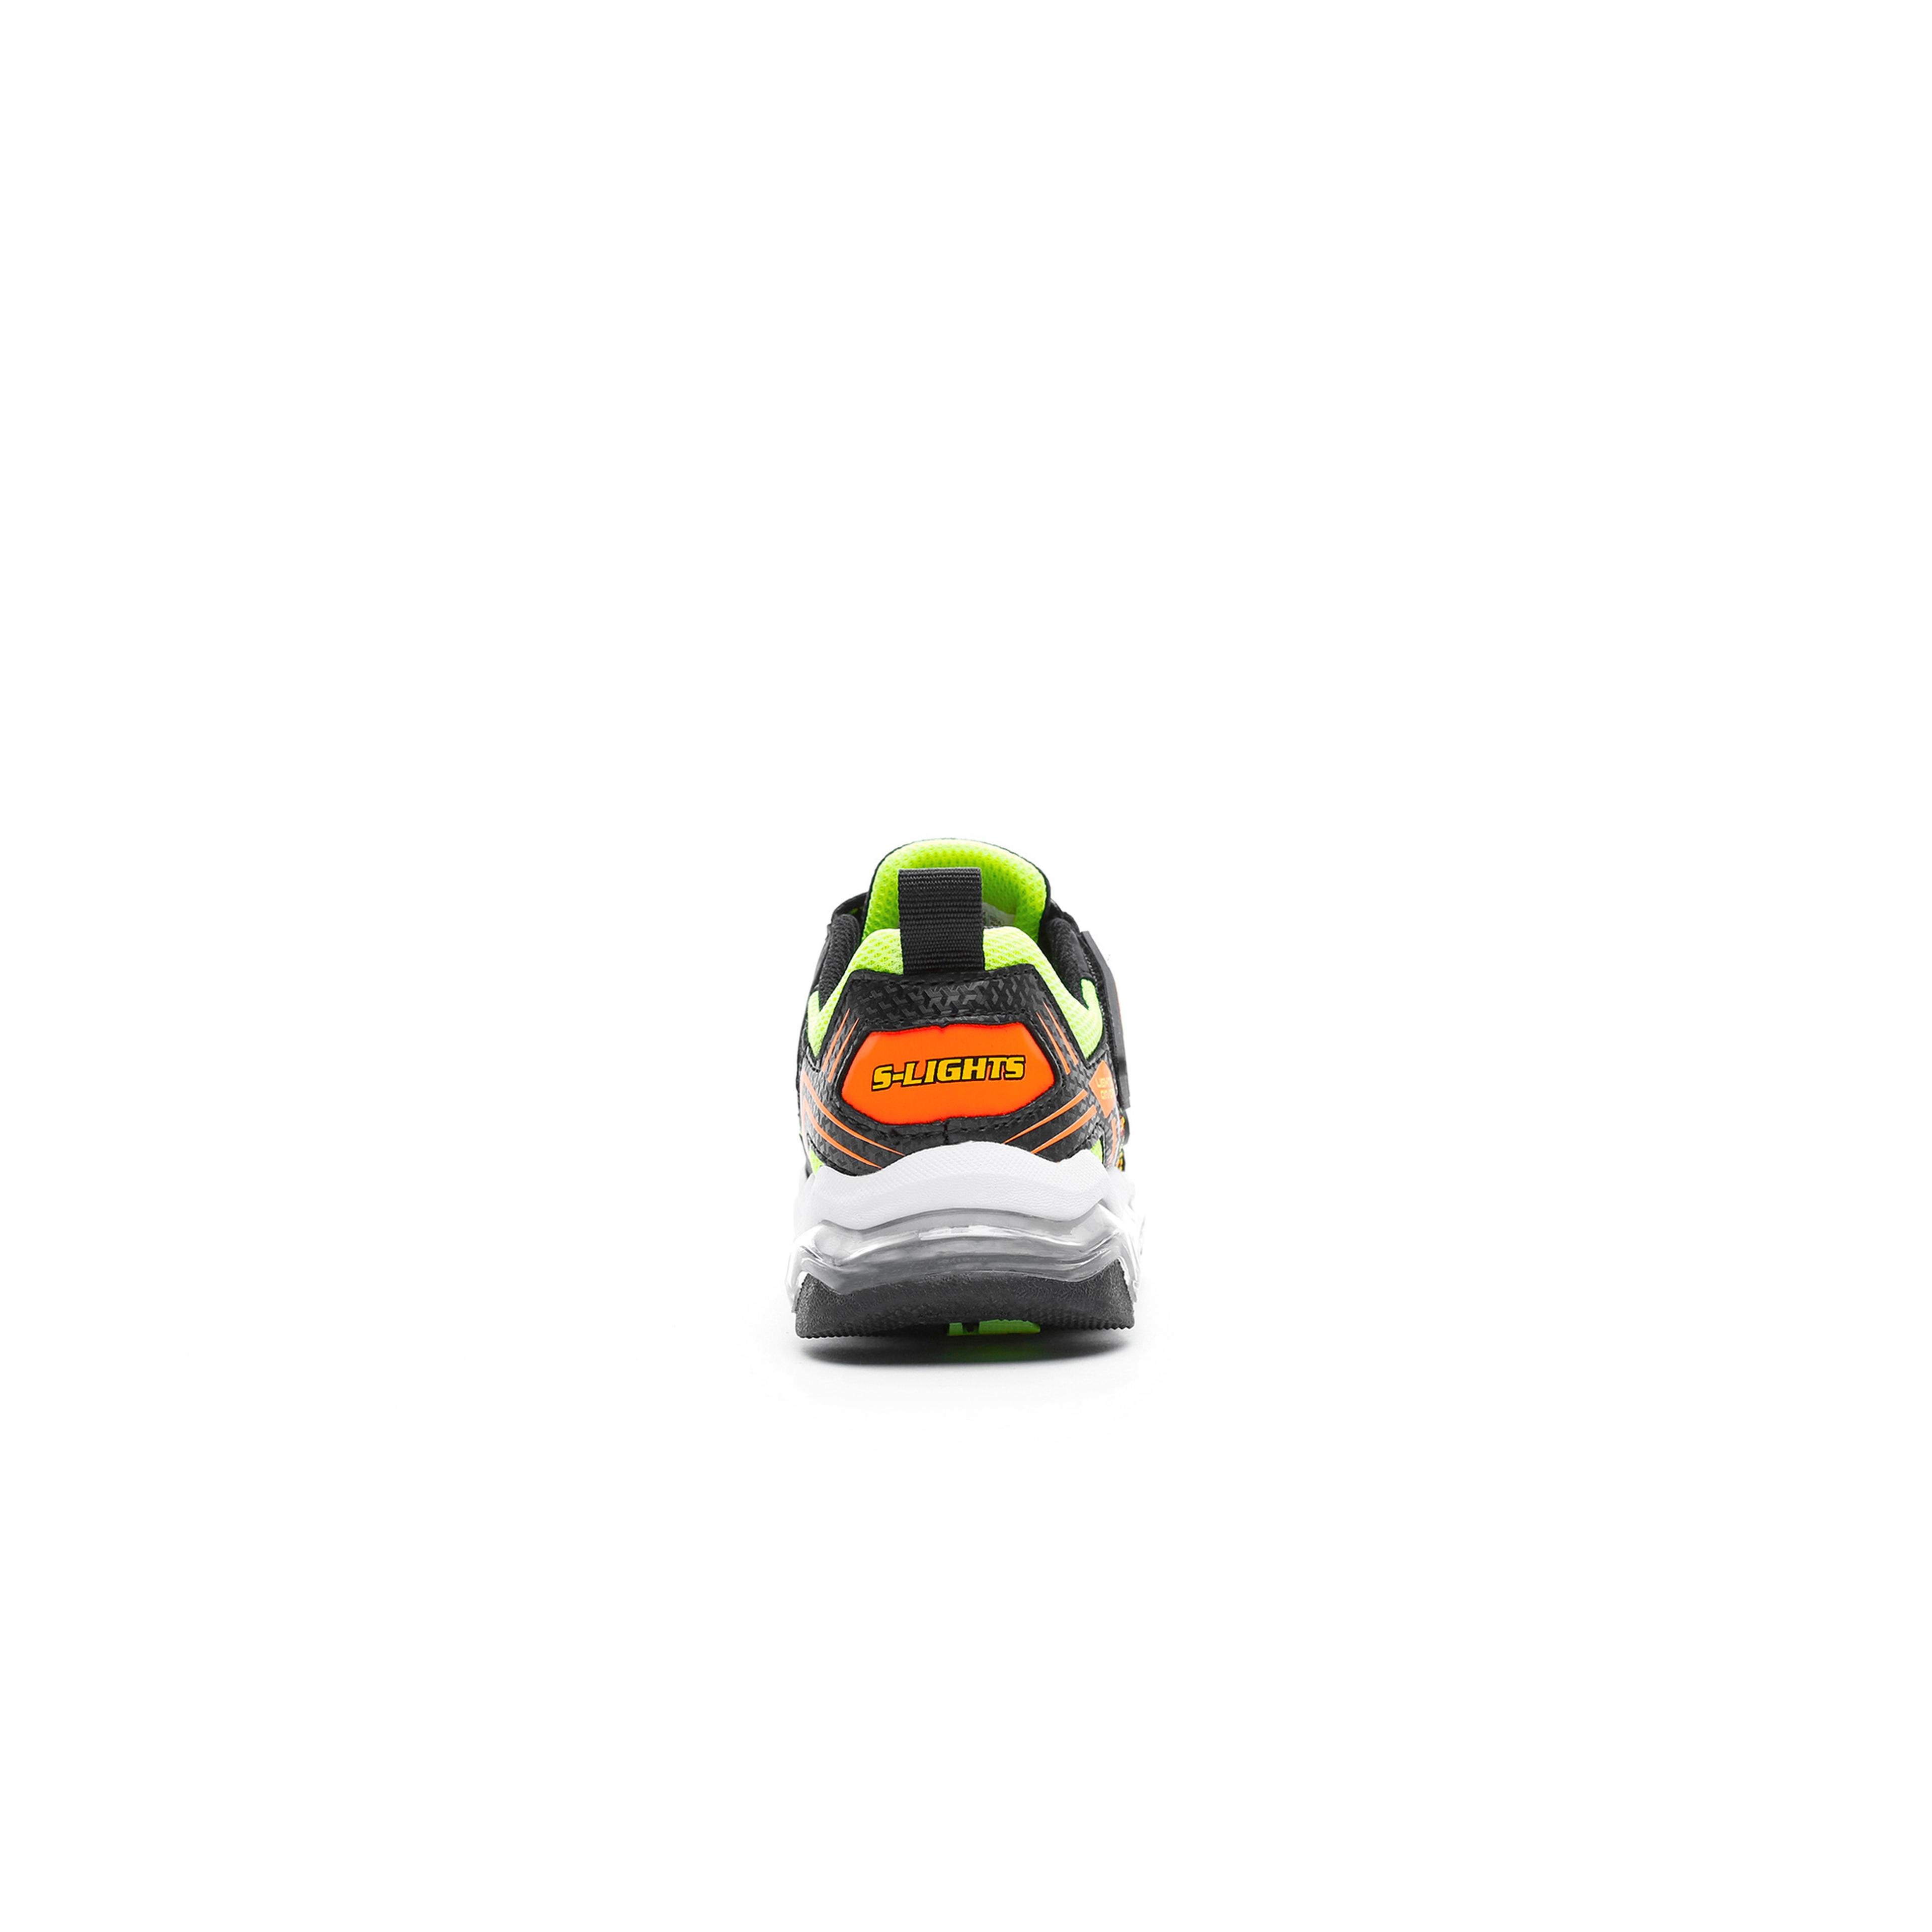 Skechers Turbowave - Tezert Çocuk Siyah Spor Ayakkabı